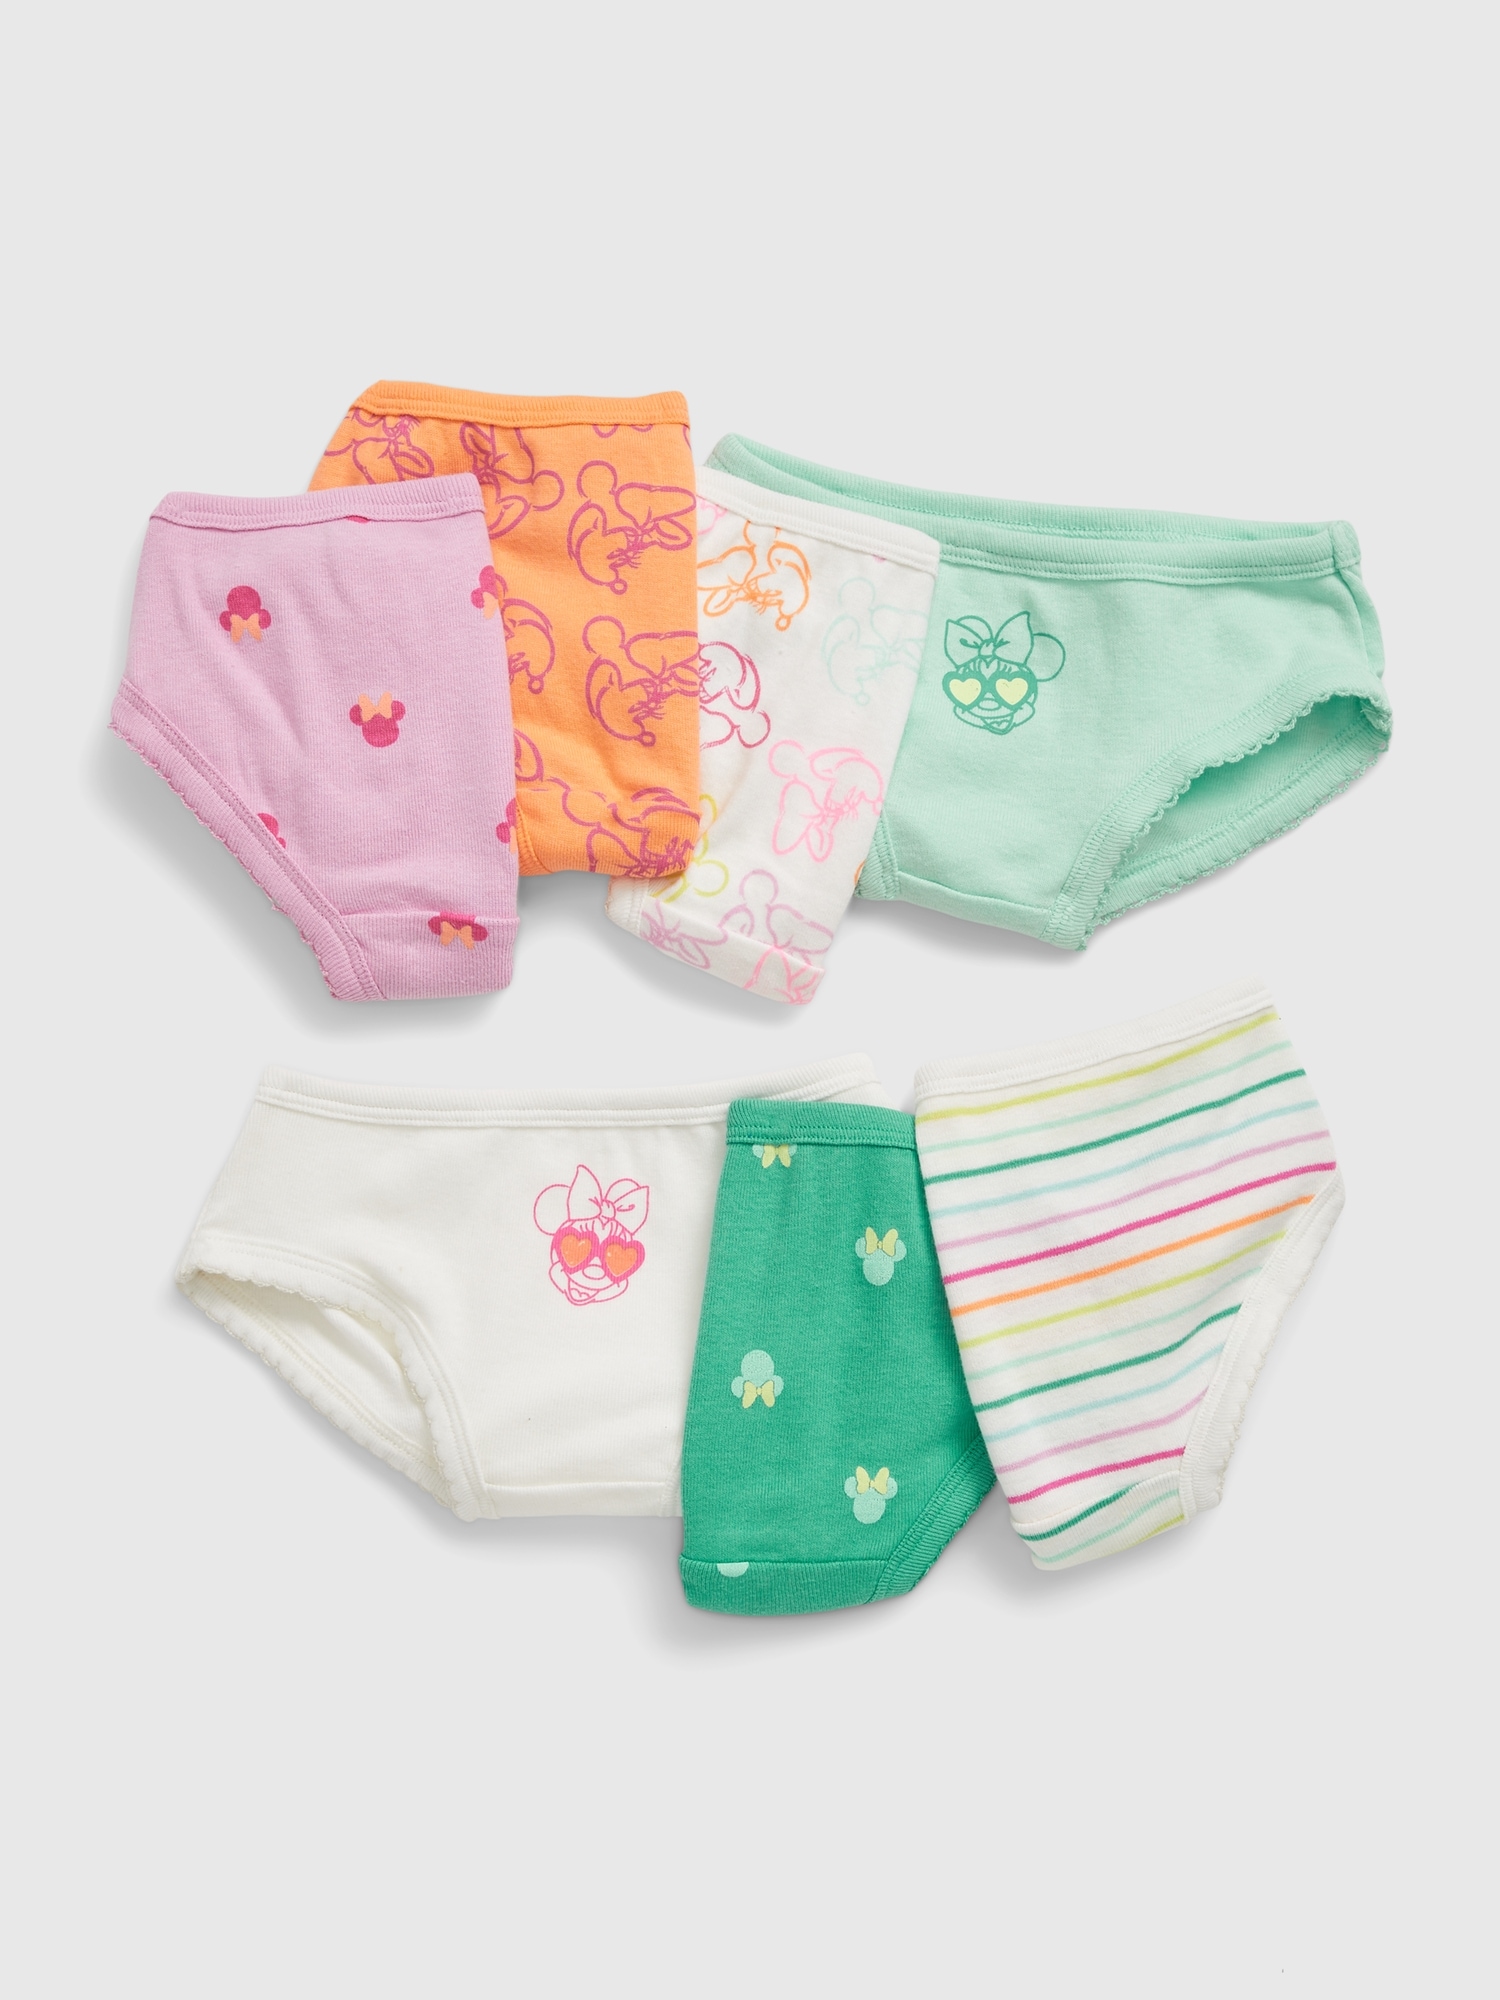 Disney Minnie Mouse Girls Underwear - Briefs 6-Pack Size 4T